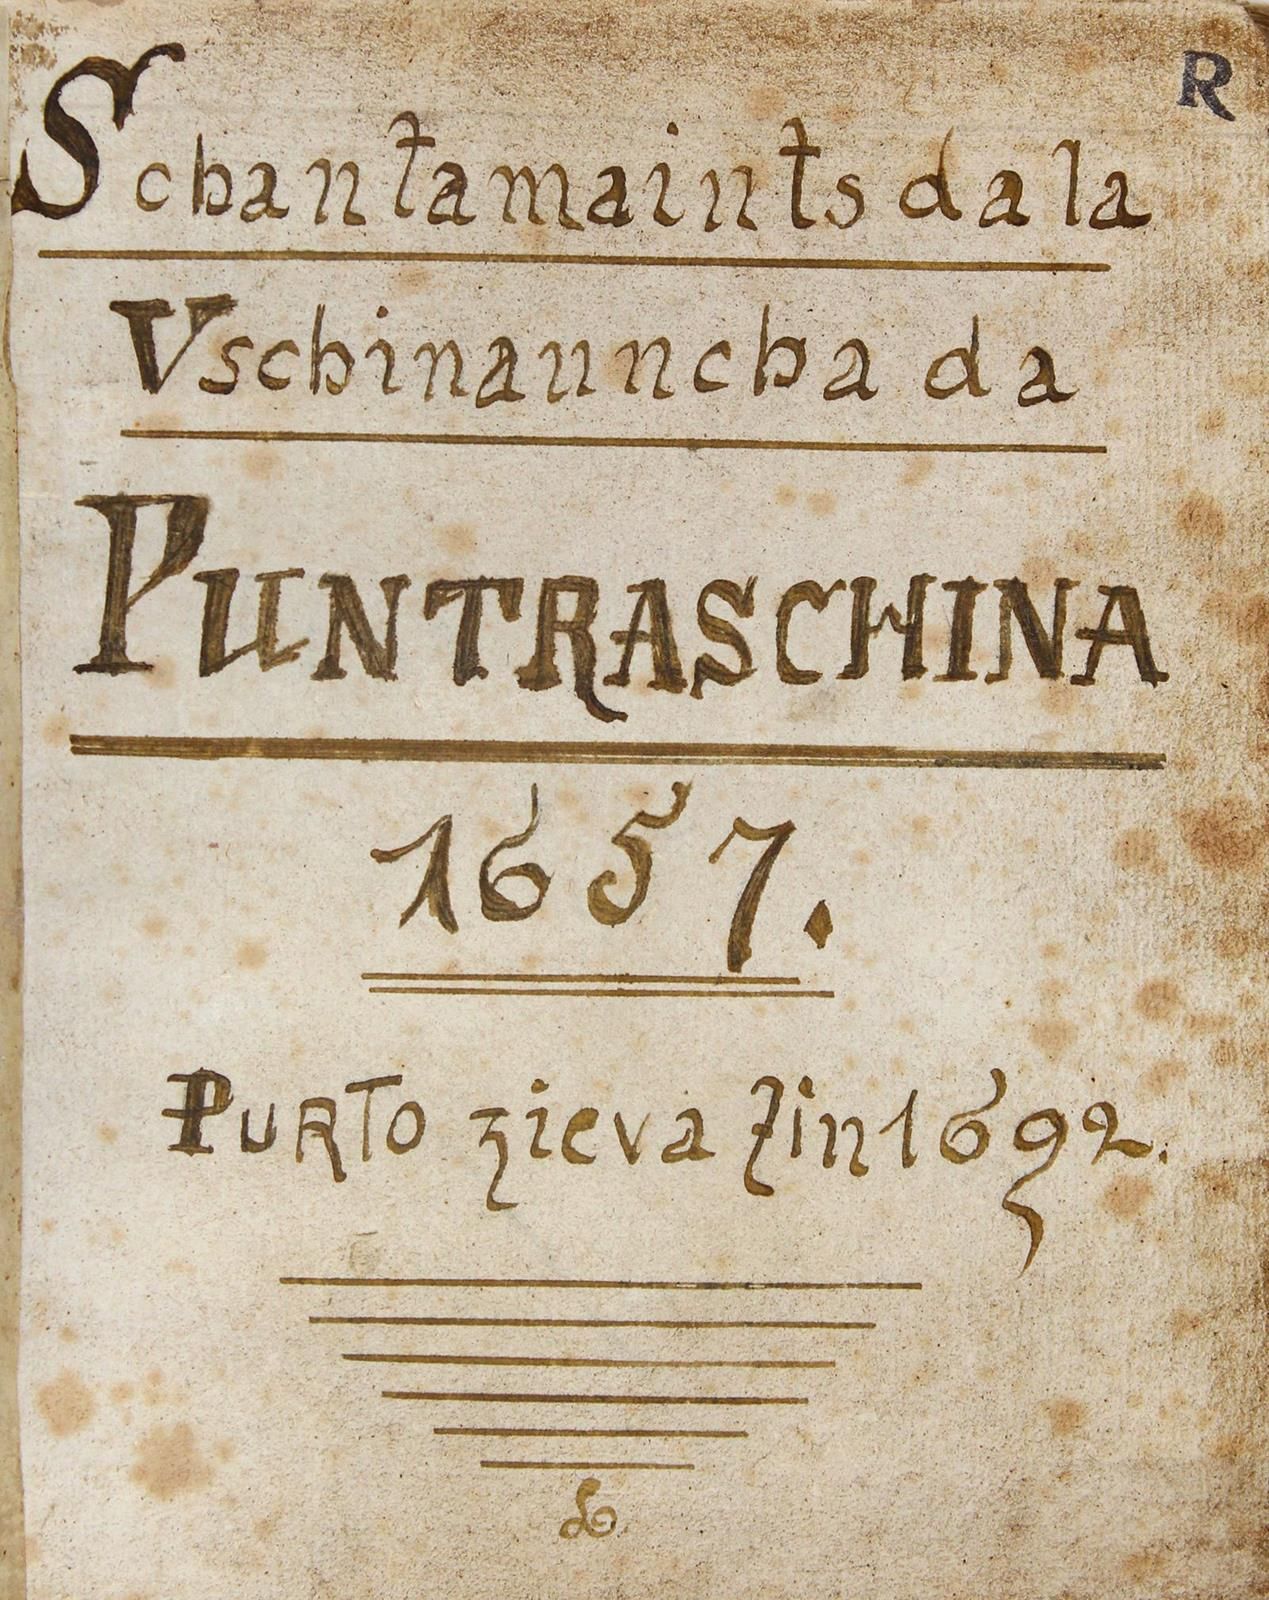 Schantamaints da la Vschinauncha da Puntraschina 1657 purto zieva zin 1692. Manu&hellip;